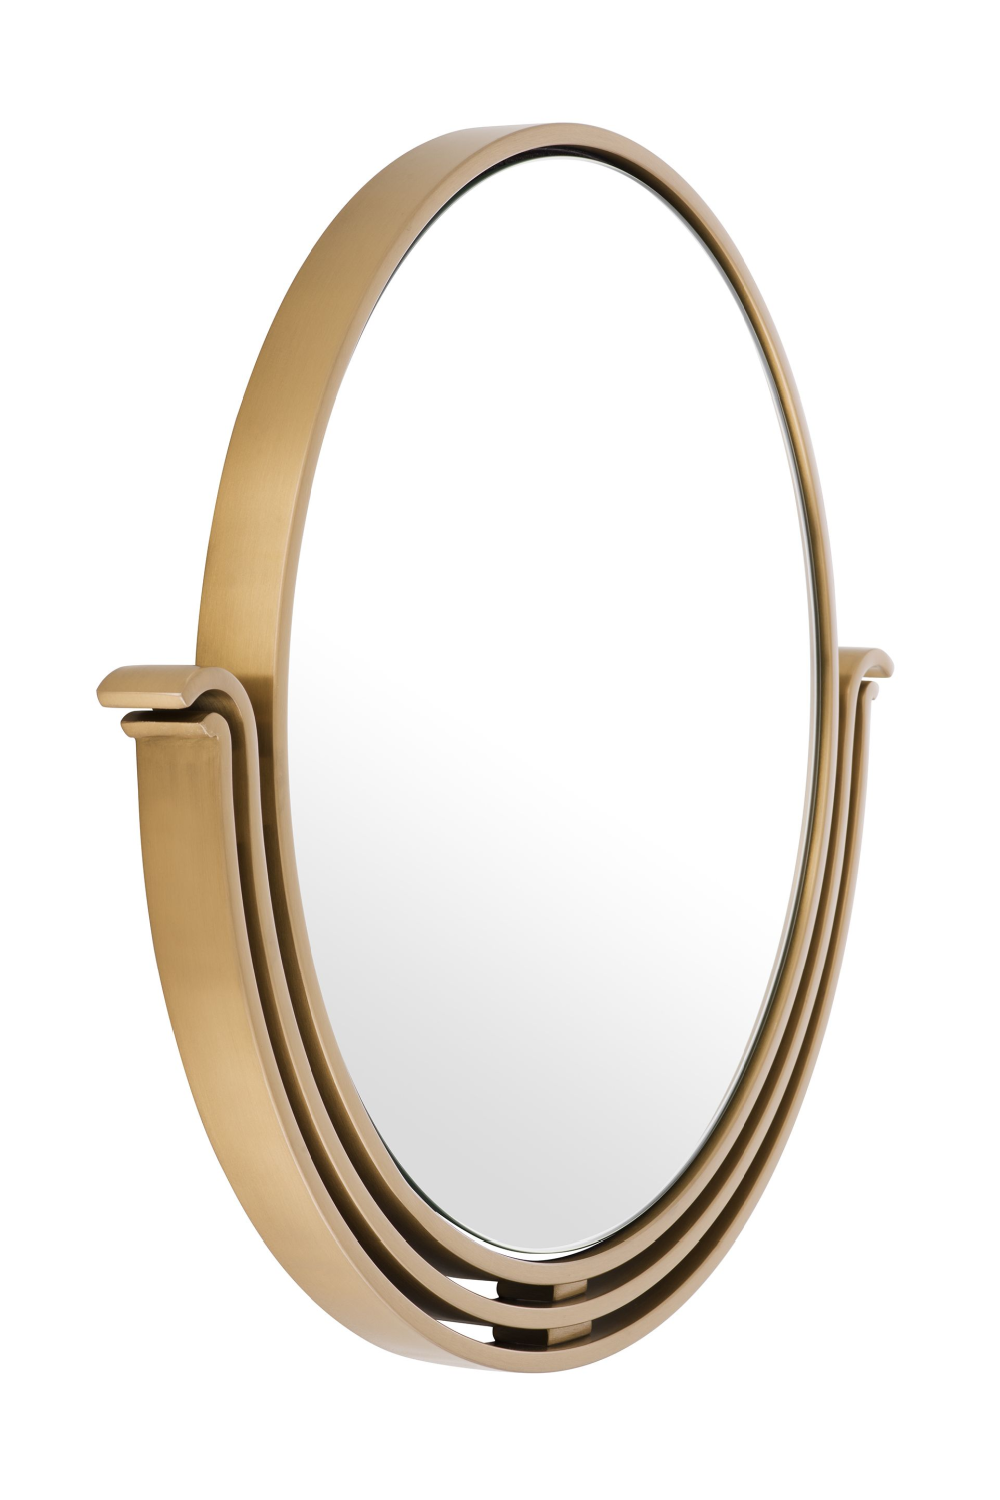 Antique Brass Round Mirror | Eichholtz Tombo | OROA.com